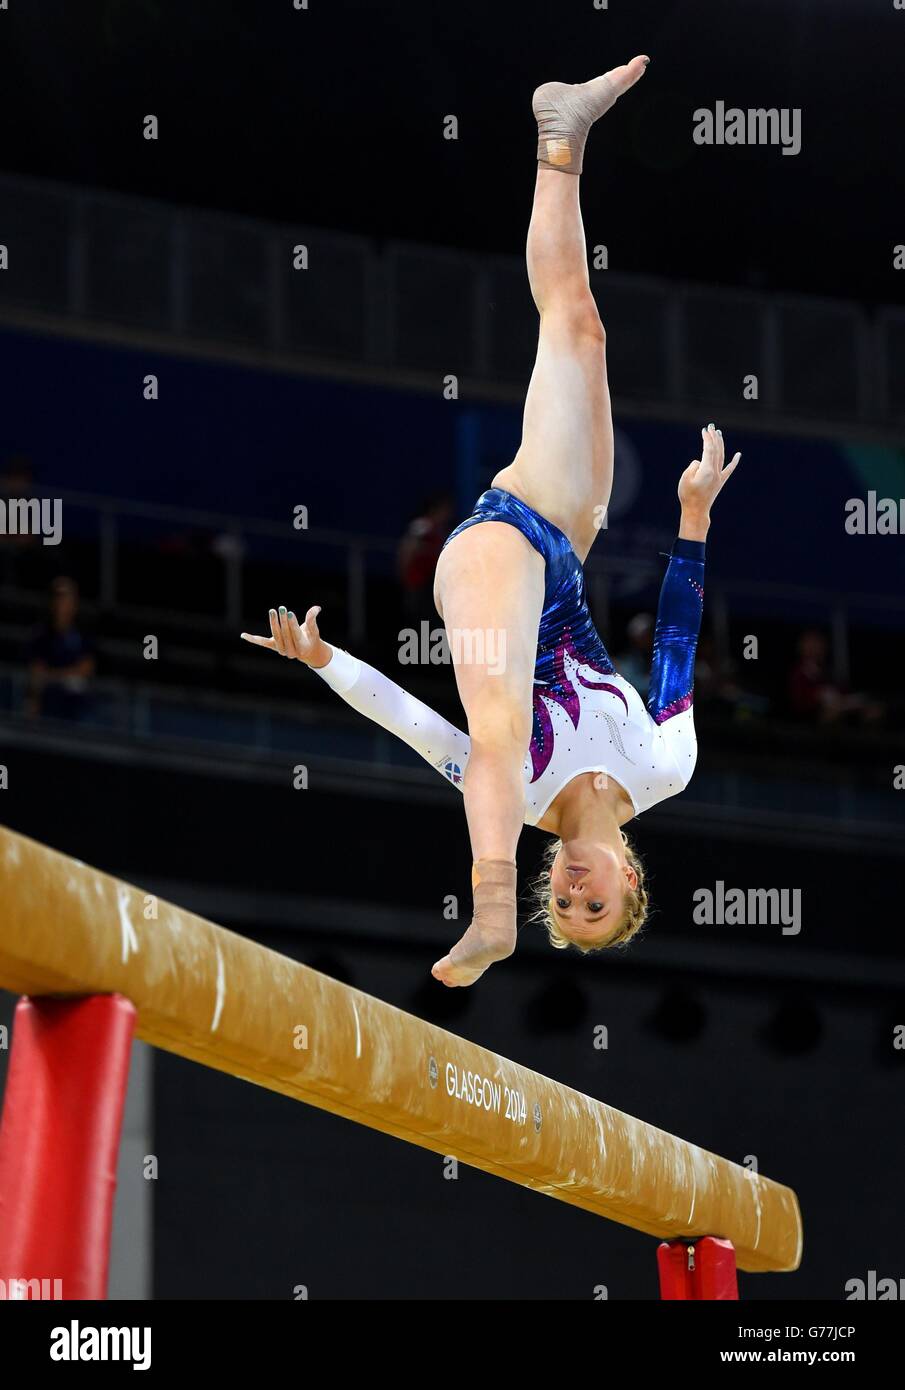 L'Écosse Cara Kennedy lors de la finale de l'équipe féminine de gymnastique artistique et de la qualification individuelle à SSE Hydro, lors des Jeux du Commonwealth de 2014 à Glasgow. Banque D'Images